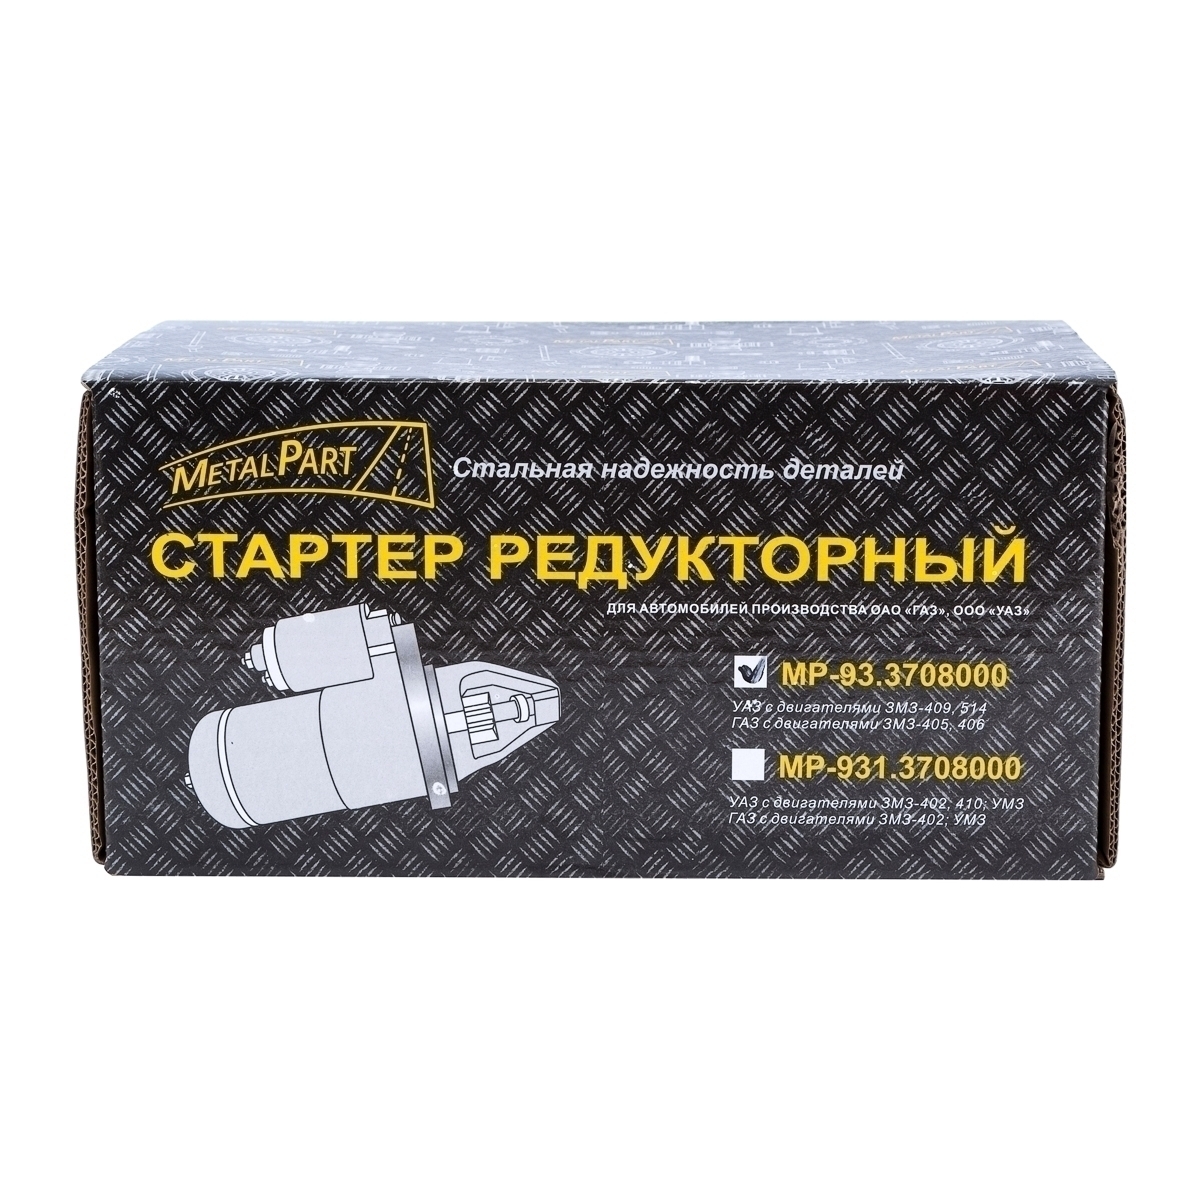 Стартер редукторный «MetalPart» для автомобилей УАЗ с двигателями ЗМЗ-409, 514; автомобилей ГАЗ с дв